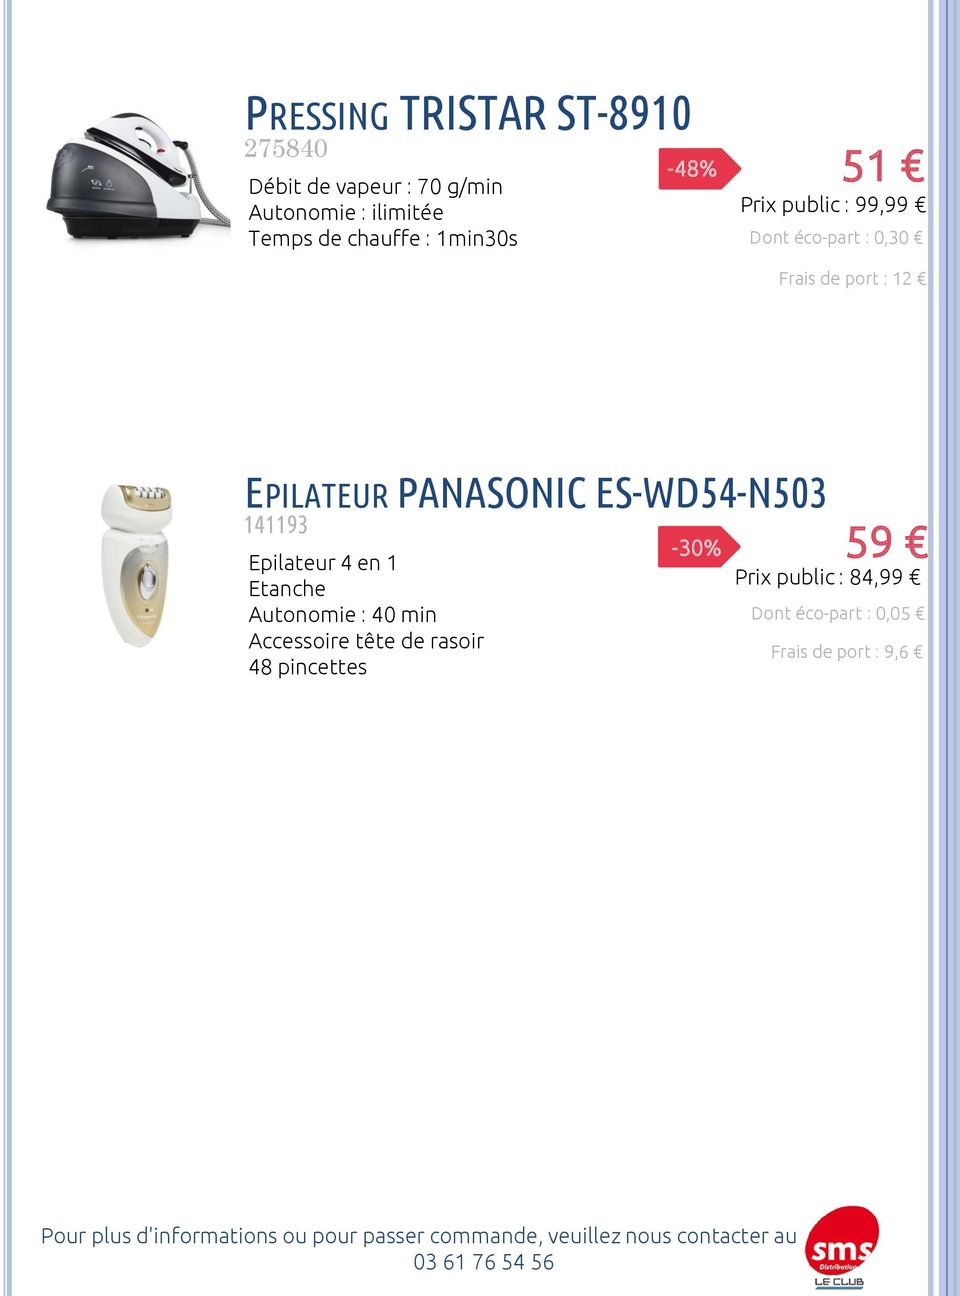 EPILATEUR PANASONIC ES-WD54-N503 141193 Epilateur 4 en 1 Etanche Autonomie : 40 min